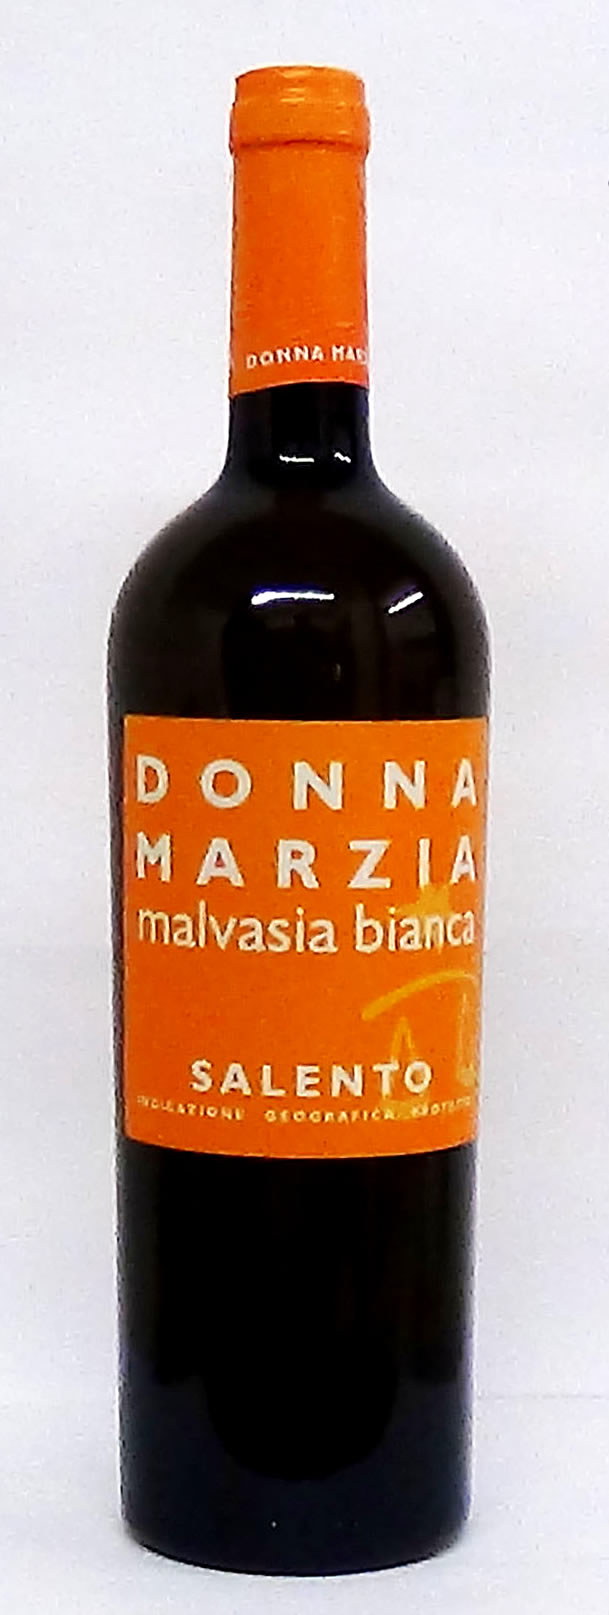 Donna Marzia Malvasia Bianca Salento - 2017 - Italy, White - Wines - M